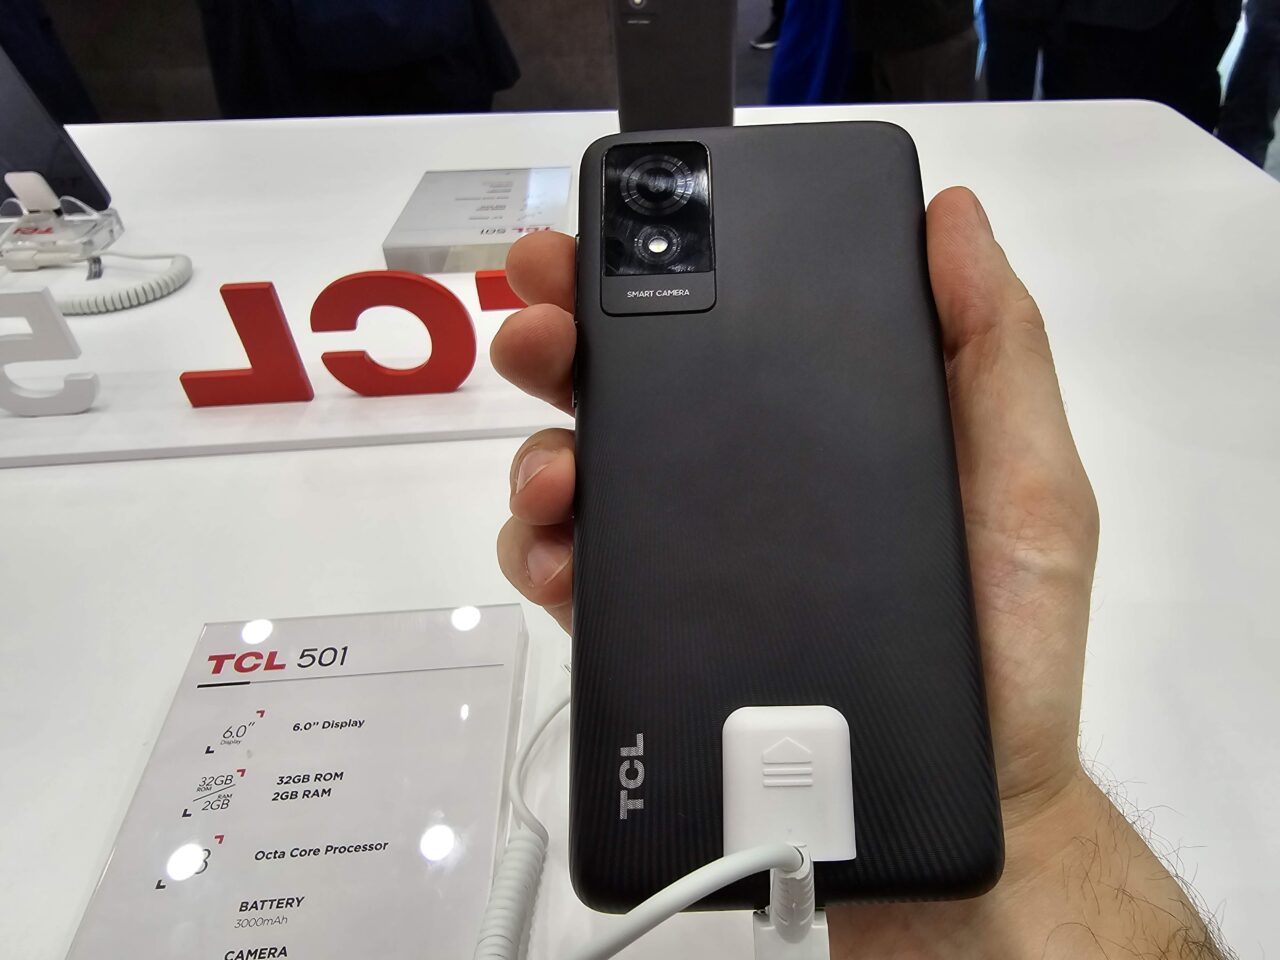 Dłoń trzymająca czarny smartfon marki TCL 501 z tyłu, z widocznym modułem aparatu i logo producenta, znajdująca się nad białą wystawą z napisem TCL i specyfikacją produktu.